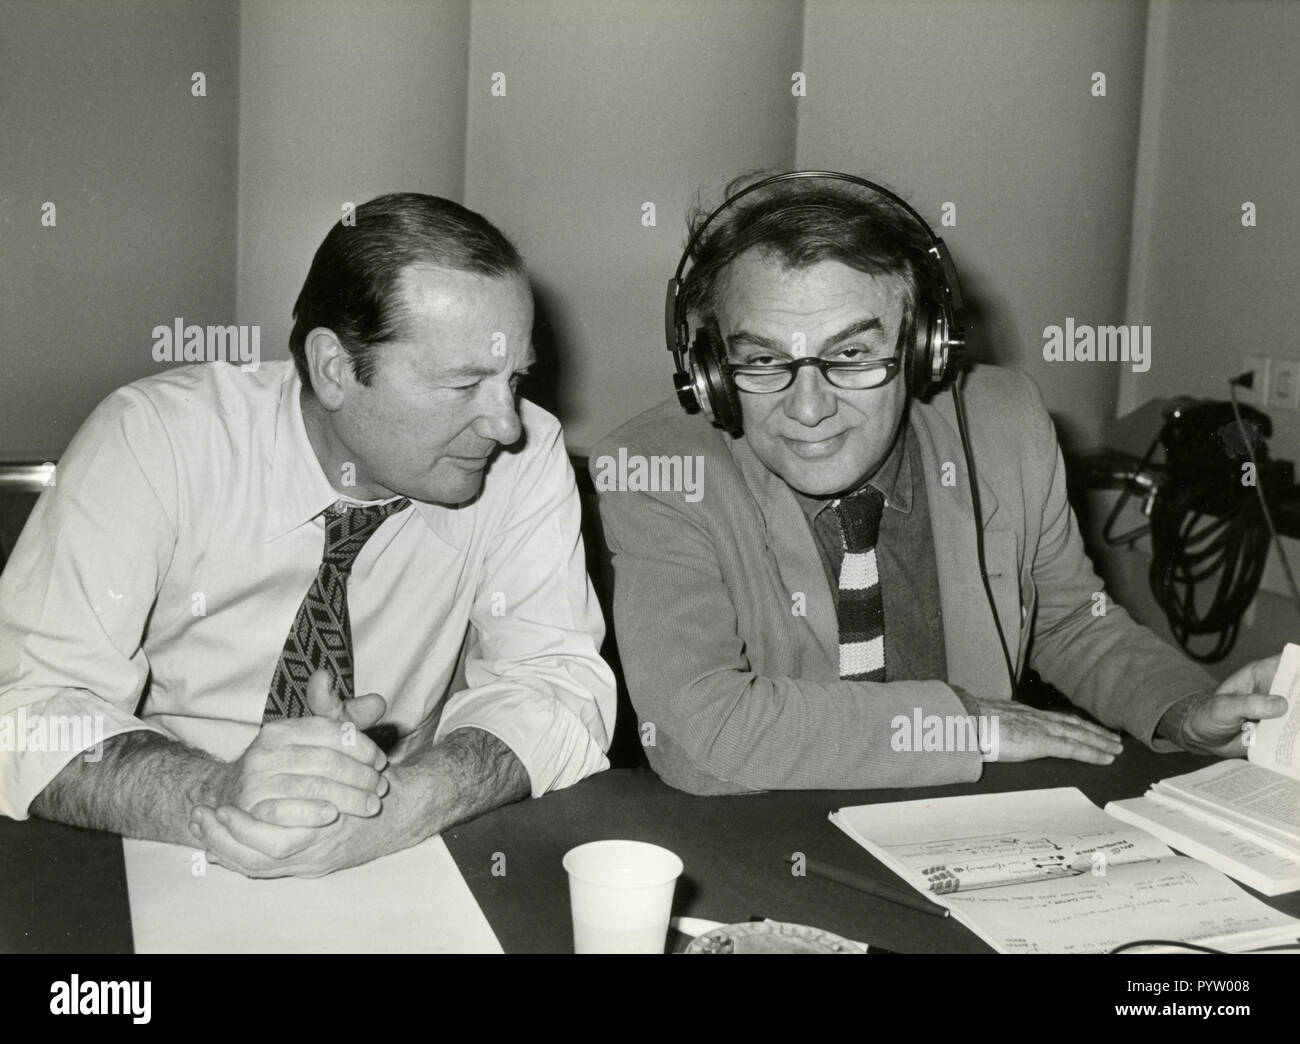 Attore italiano e regista Giorgio Albertazzi e Gianni Bisiach, degli anni ottanta Foto Stock